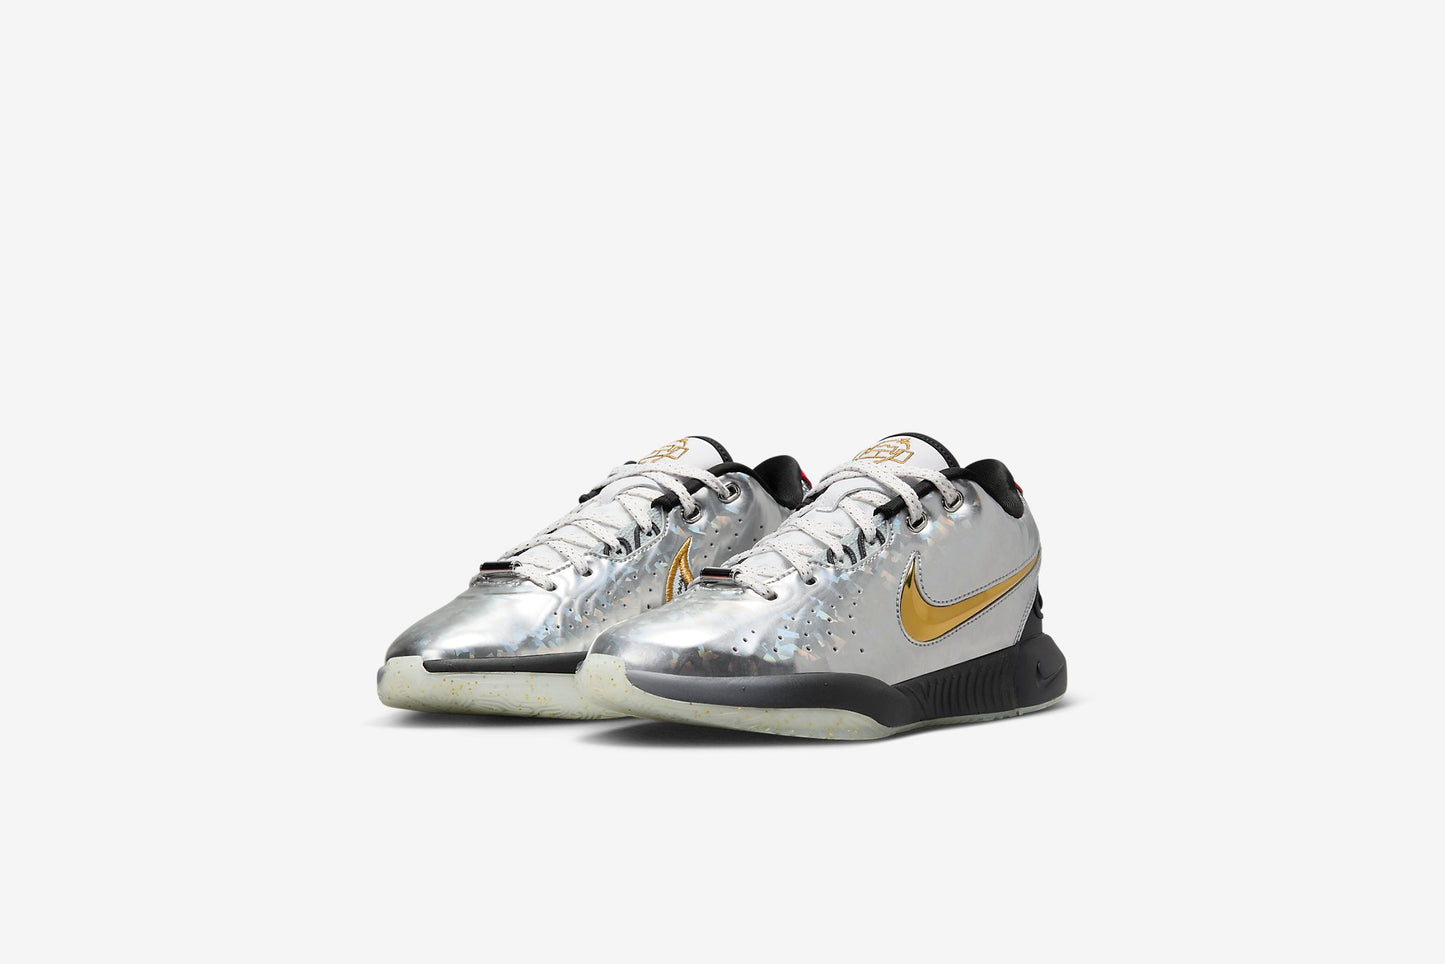 Nike "LeBron XXI" GS - Metallic Silver / Metallic Gold